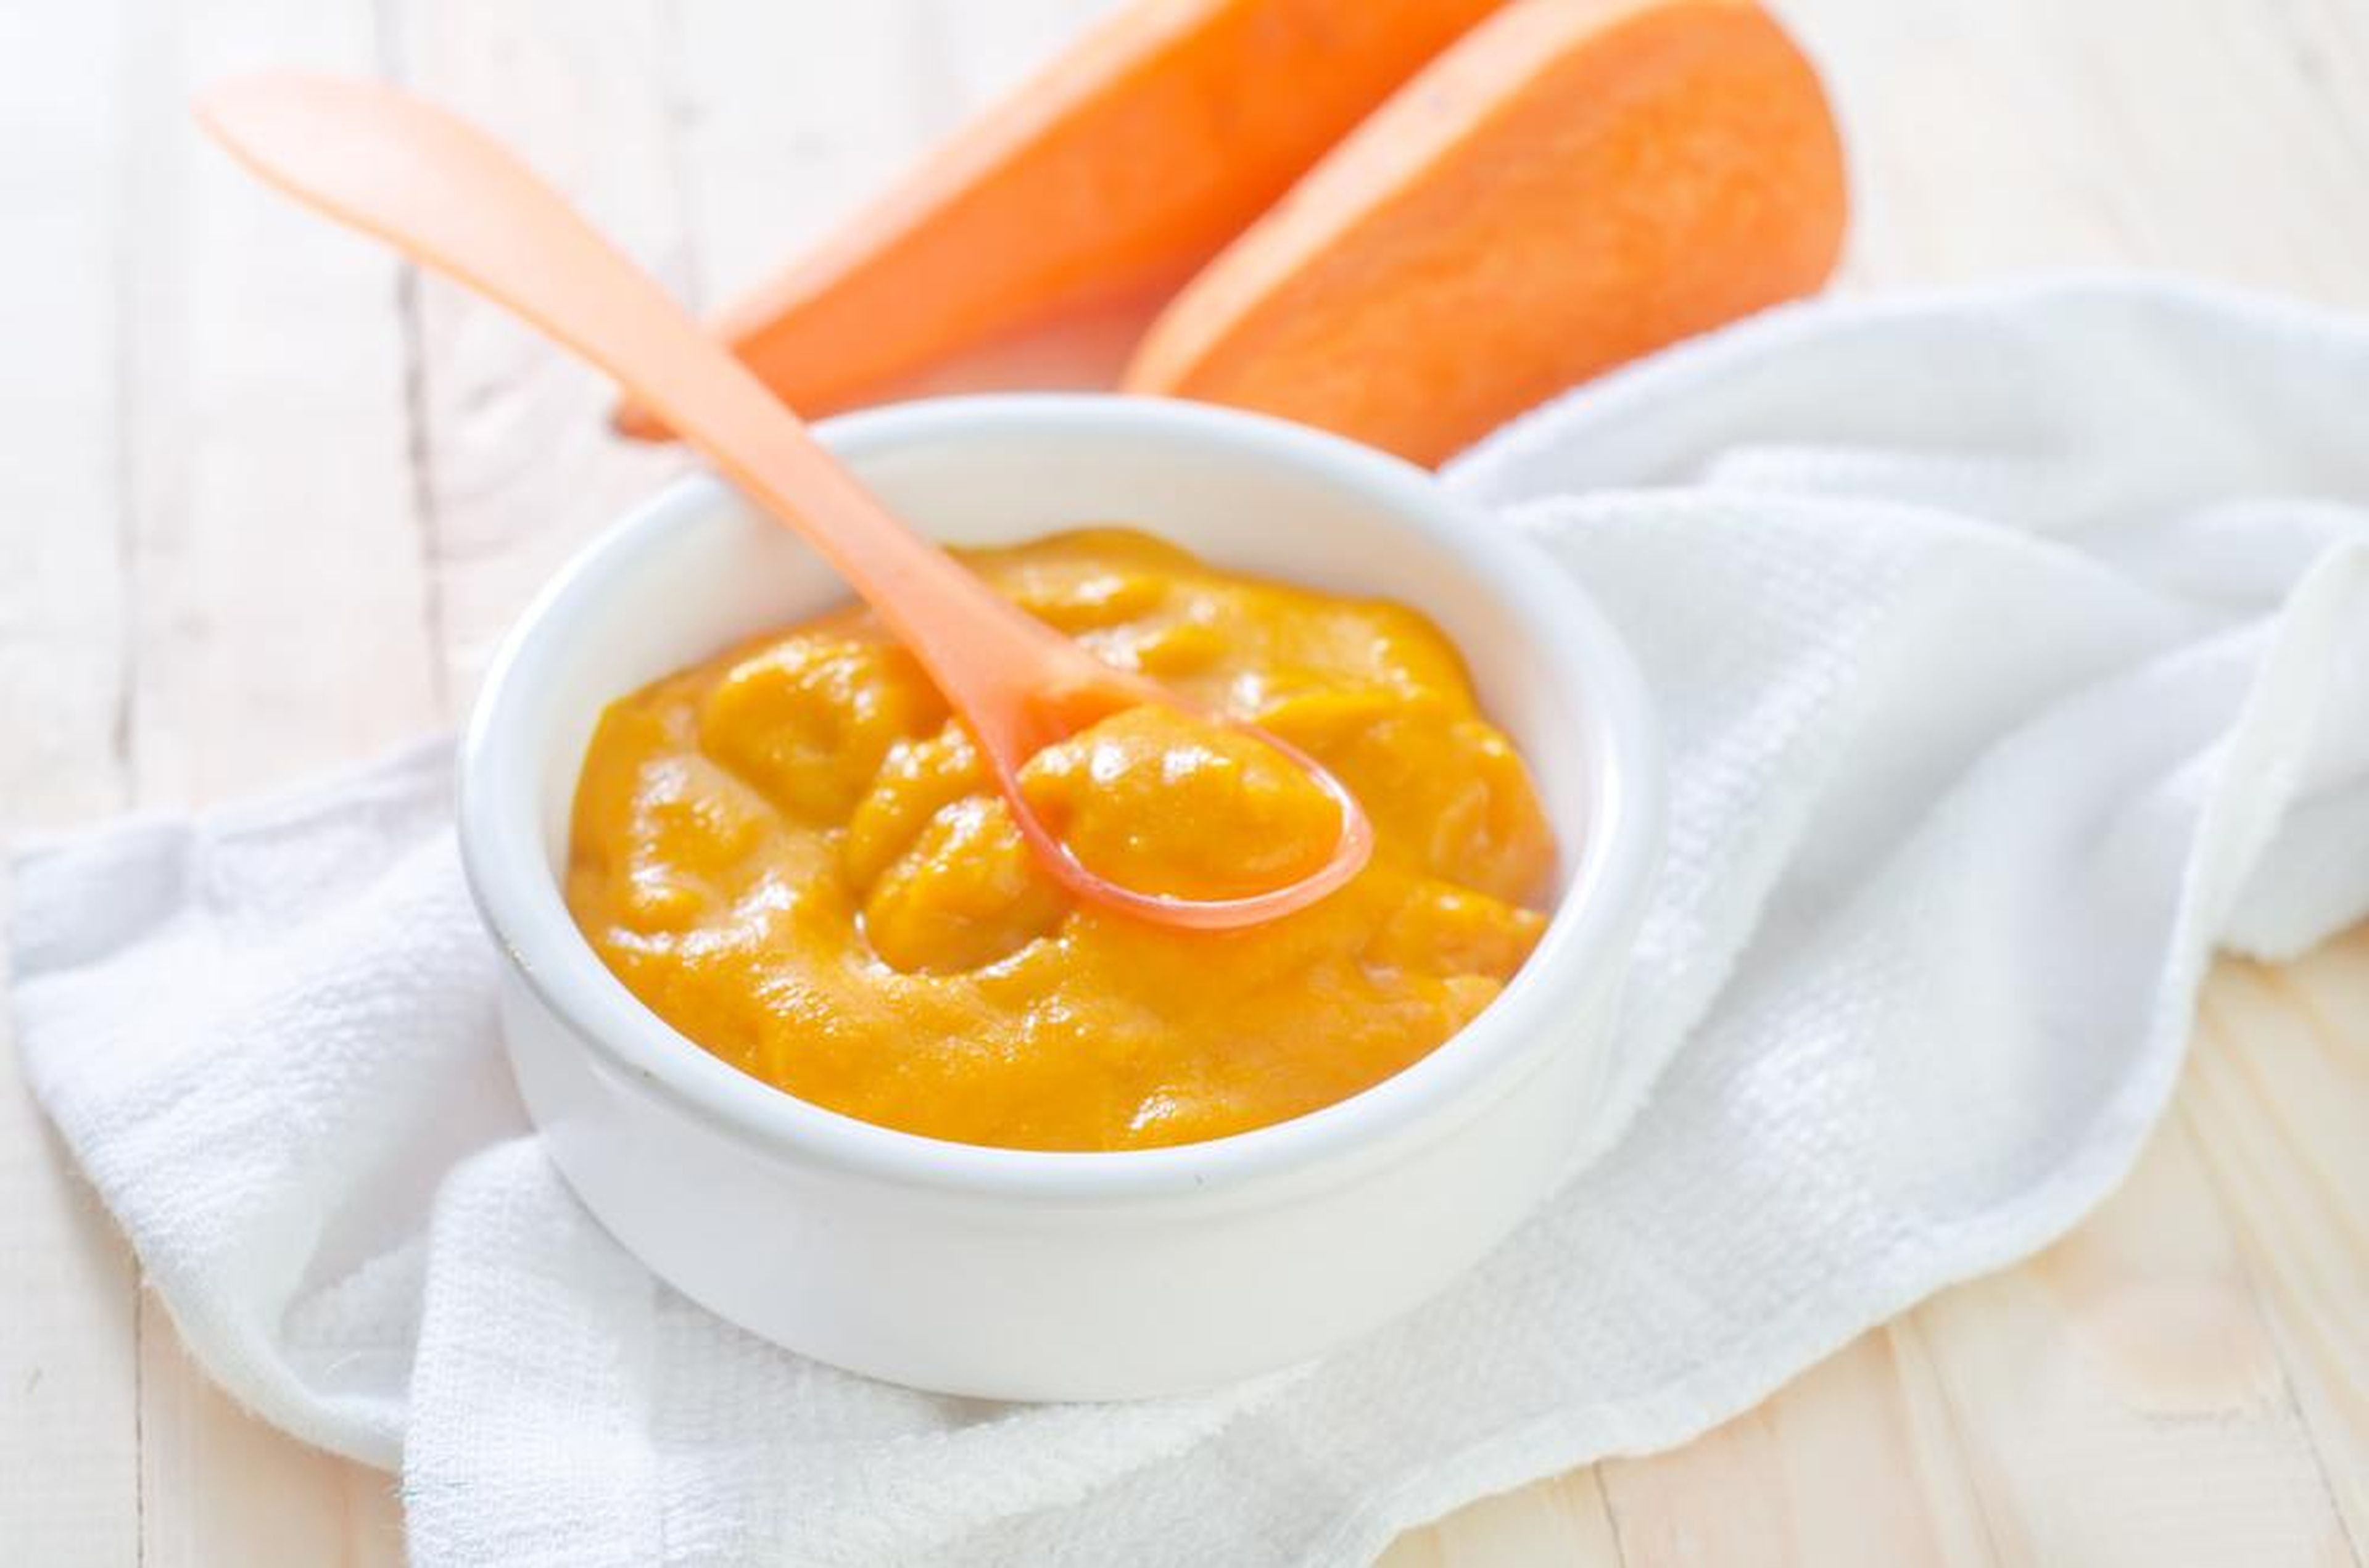 El puré de zanahorias, junto con otros alimentos, es sano, por supuesto.